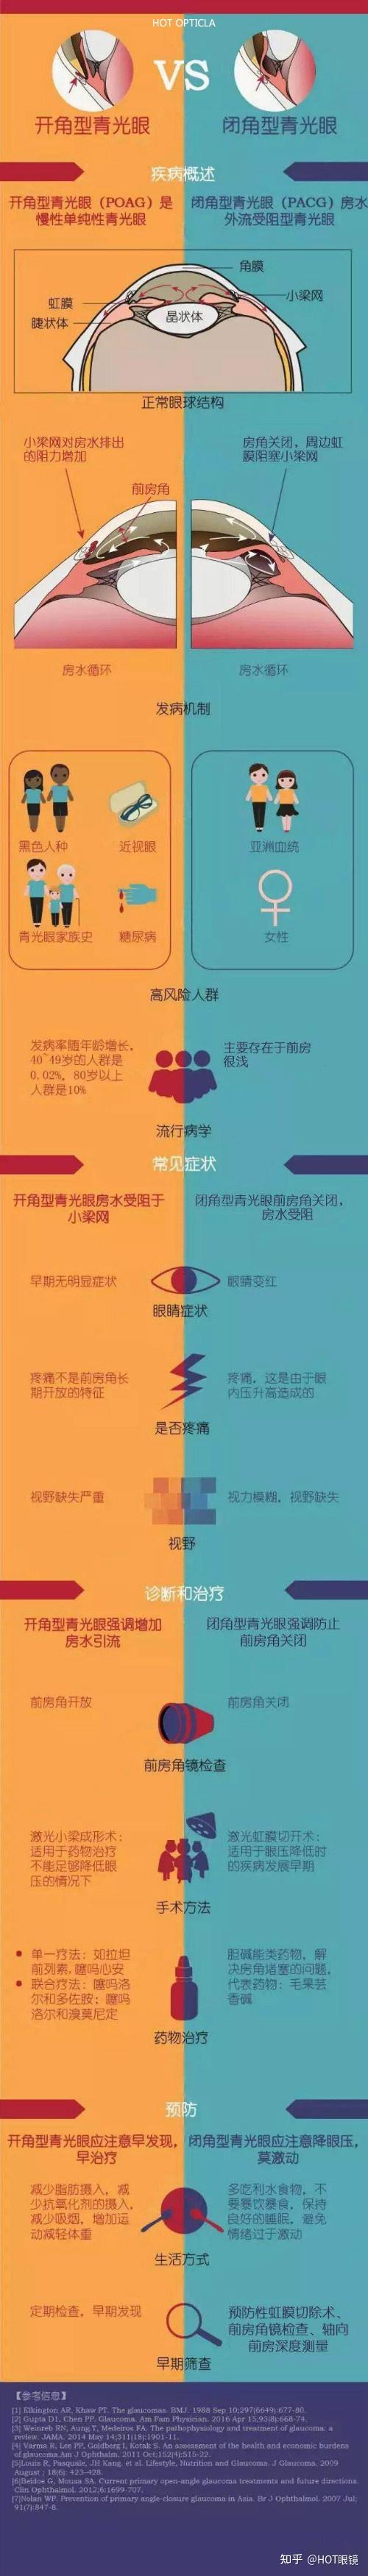 开角型青光眼vs闭角型青光眼